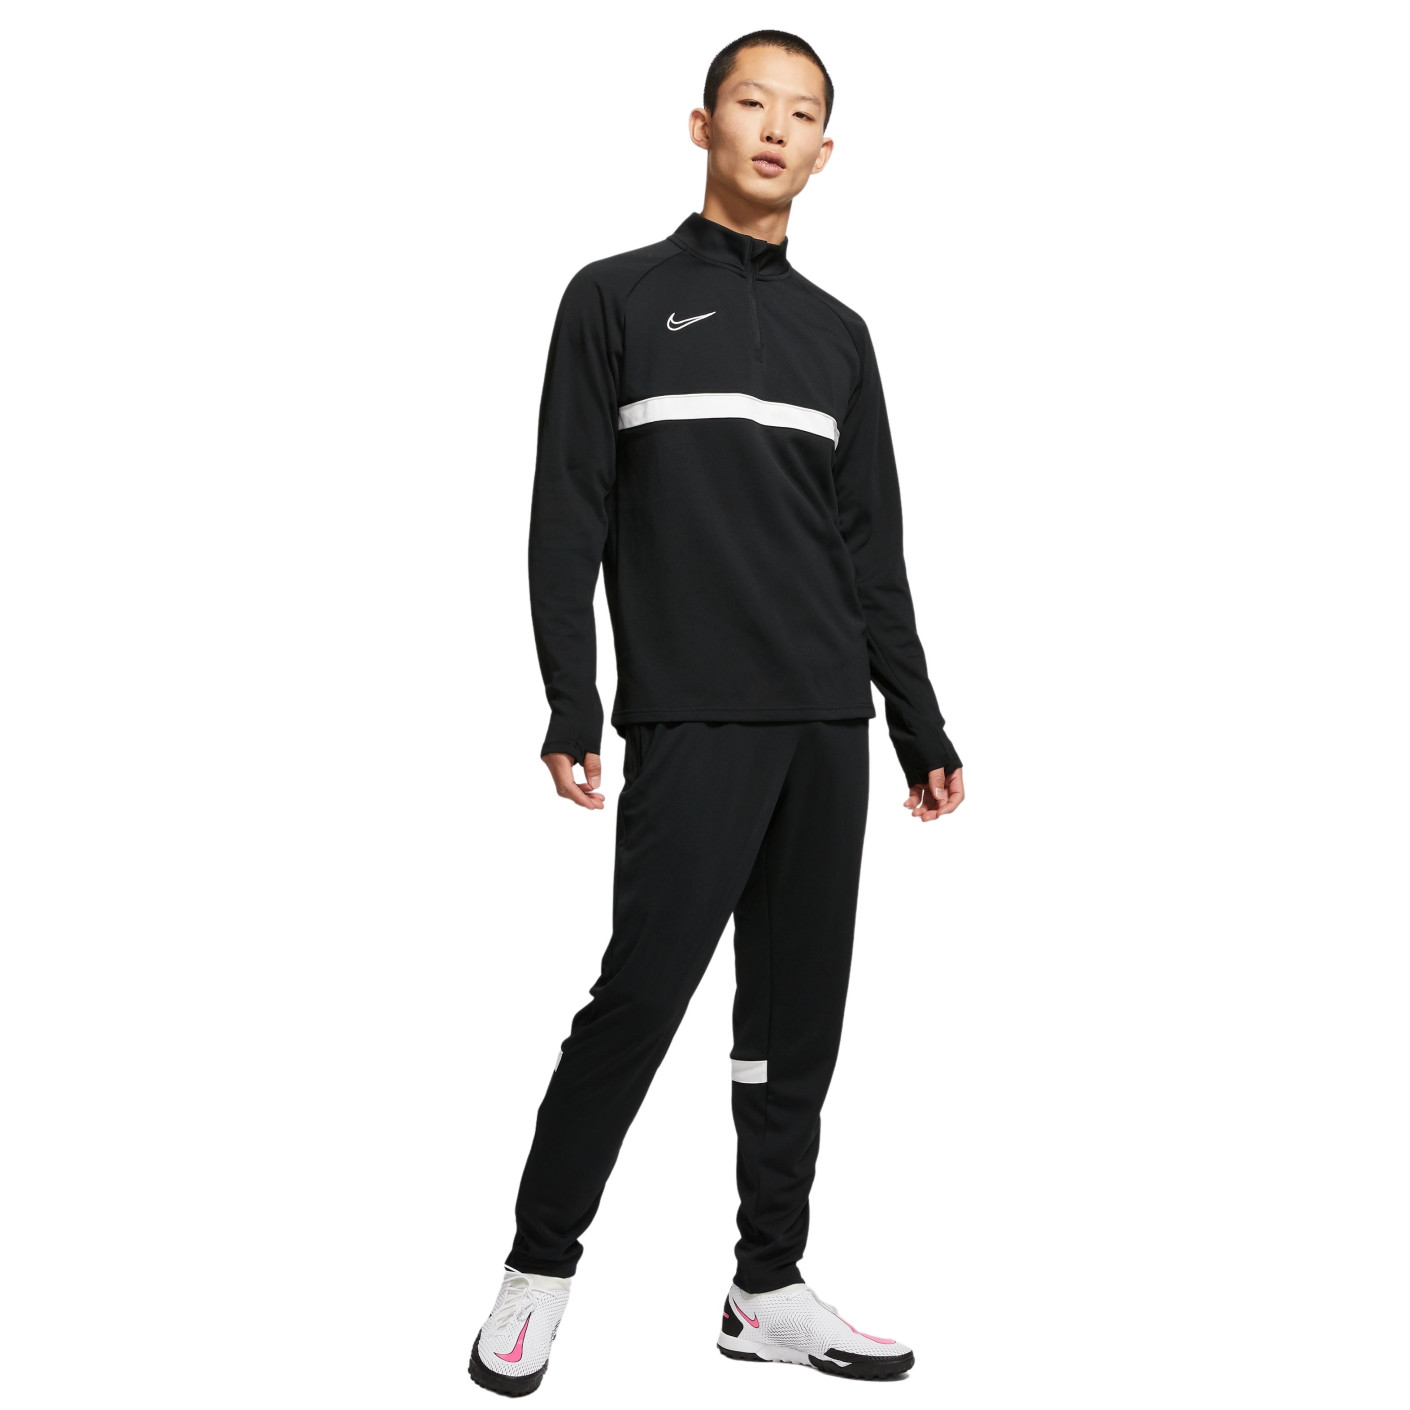 Nike Dri-Fit Academy 21 Trainingspak Zwart Wit Zwart